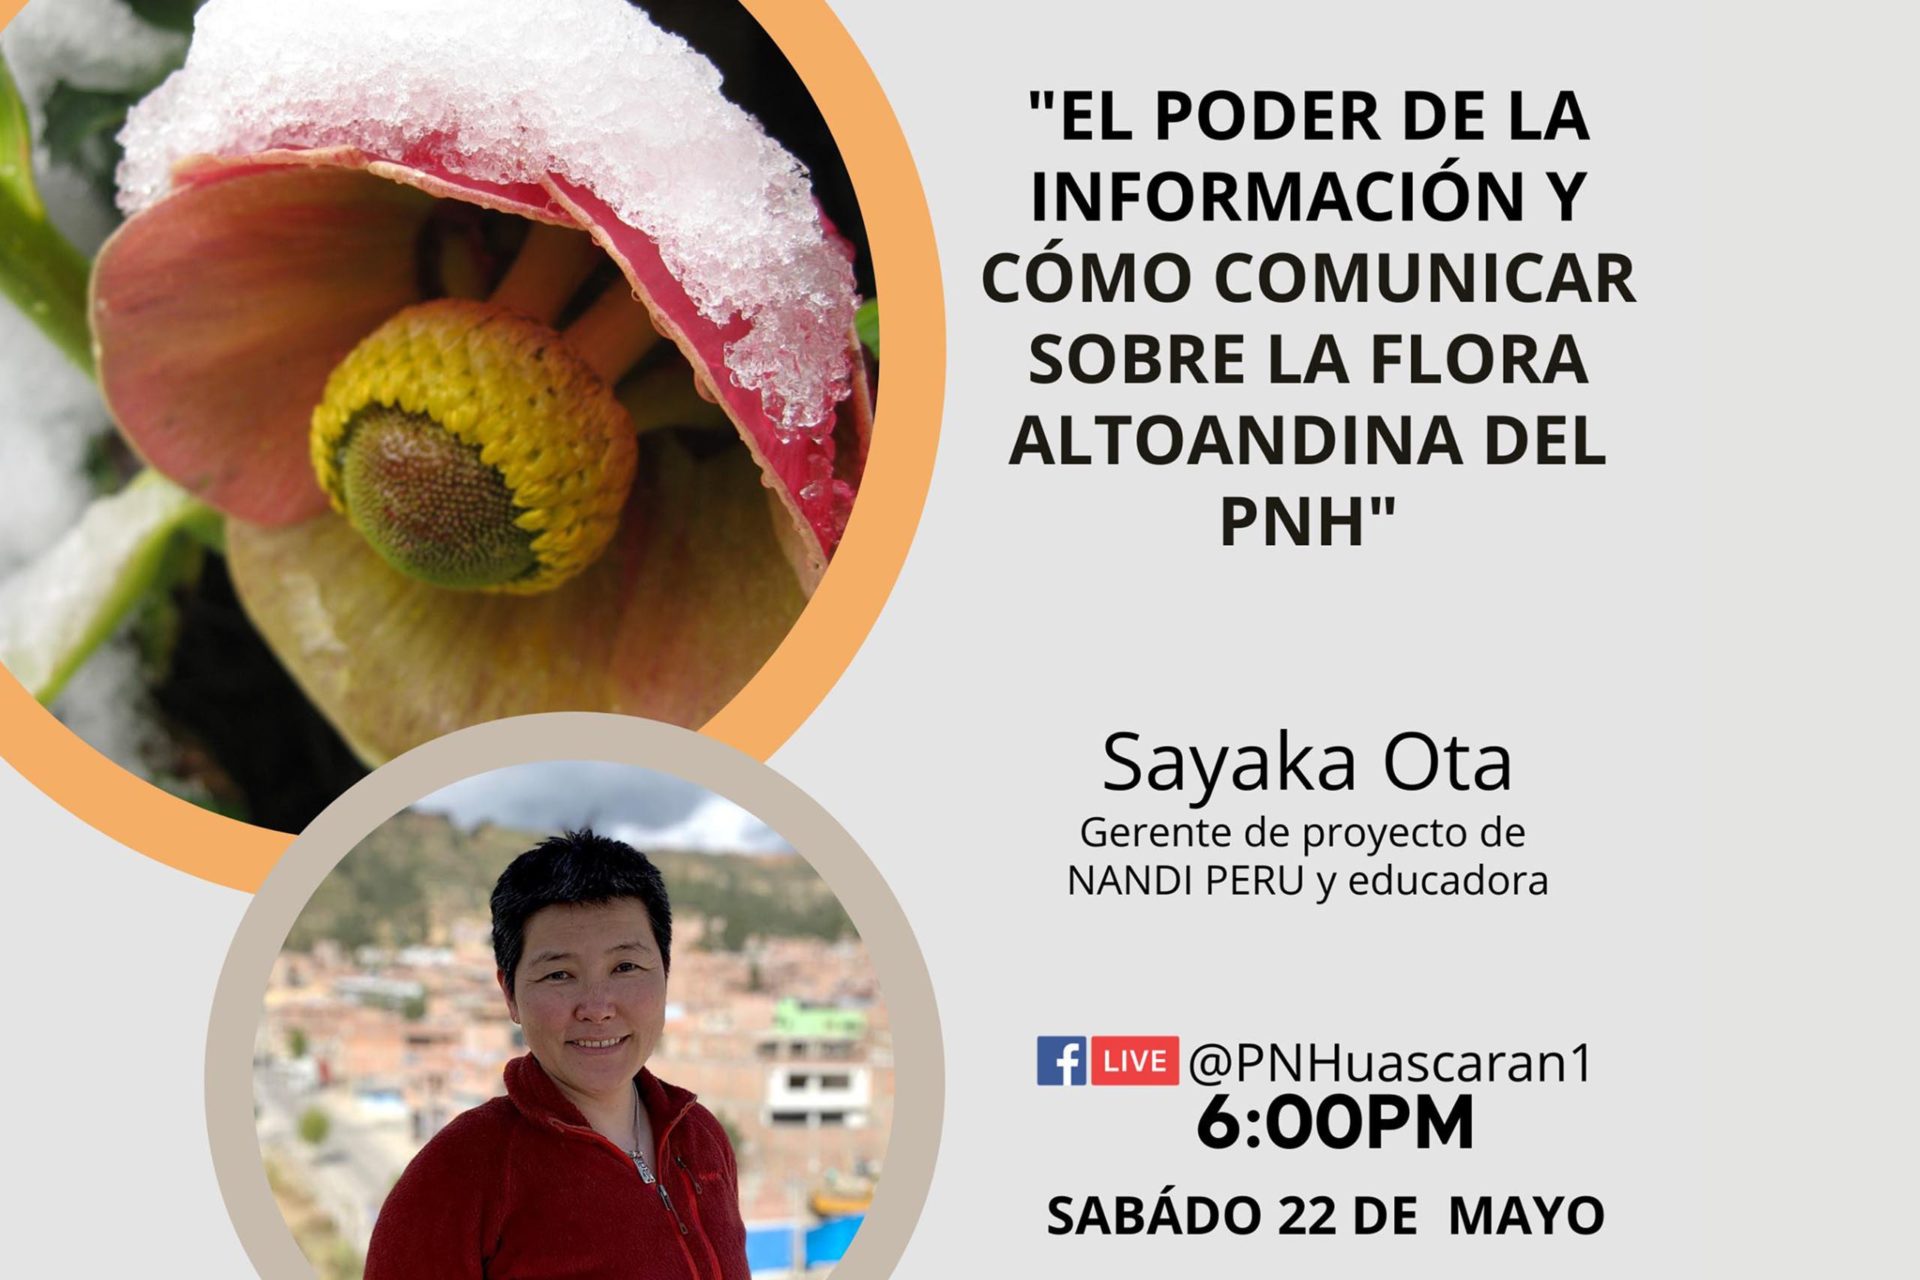 Sayaka-Ota-nandi-peru-interpretación-del-patrimonio_proyecto-ponencia-PNH-2-eye2